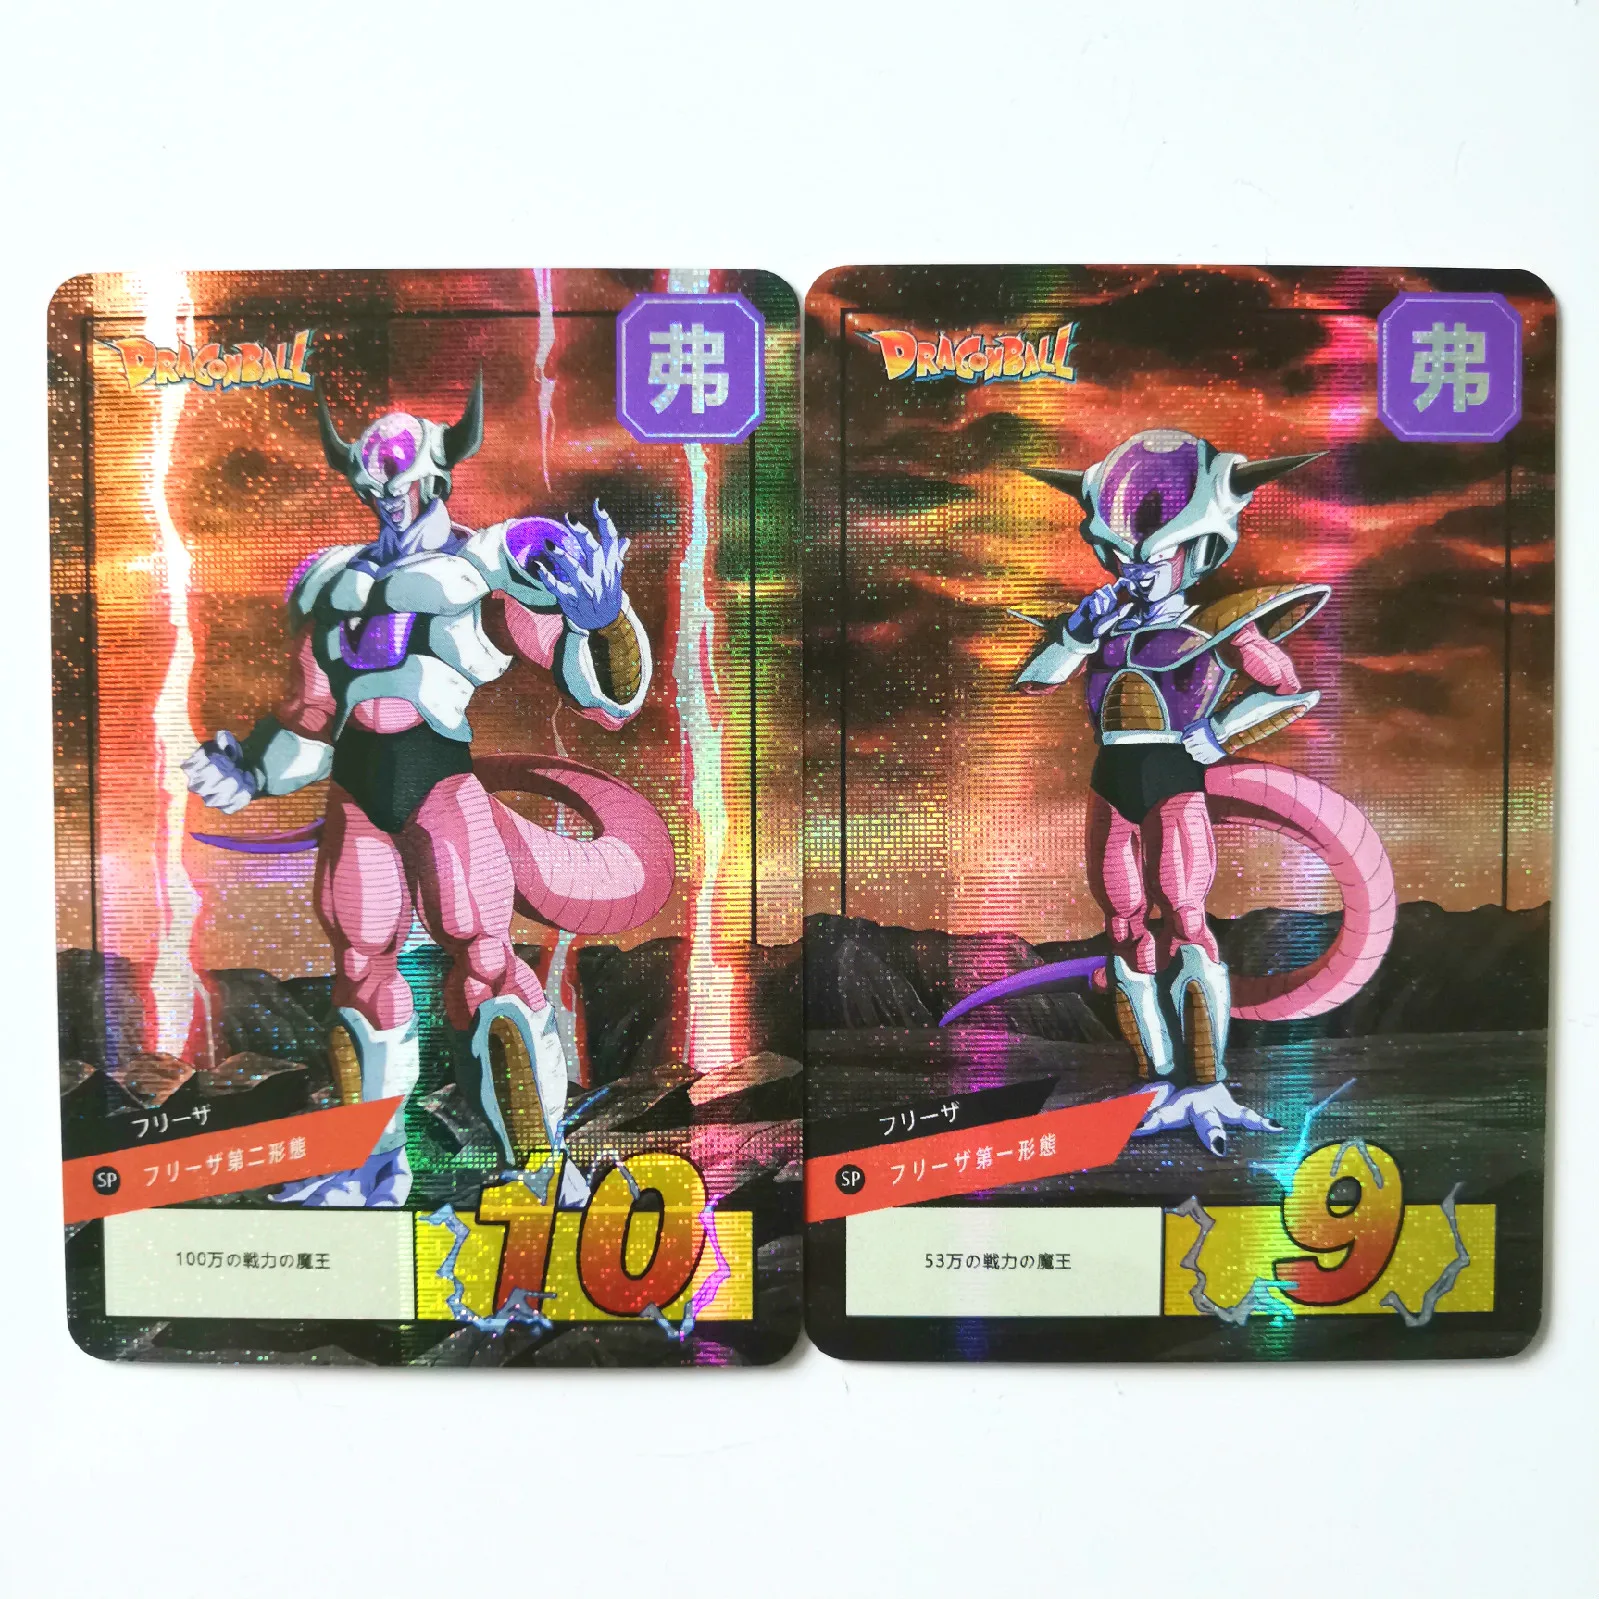 14 шт./компл. супер Dragon Ball-Z Heroes боевой карты Ultra Instinct Гоку Вегета игровая коллекция карт